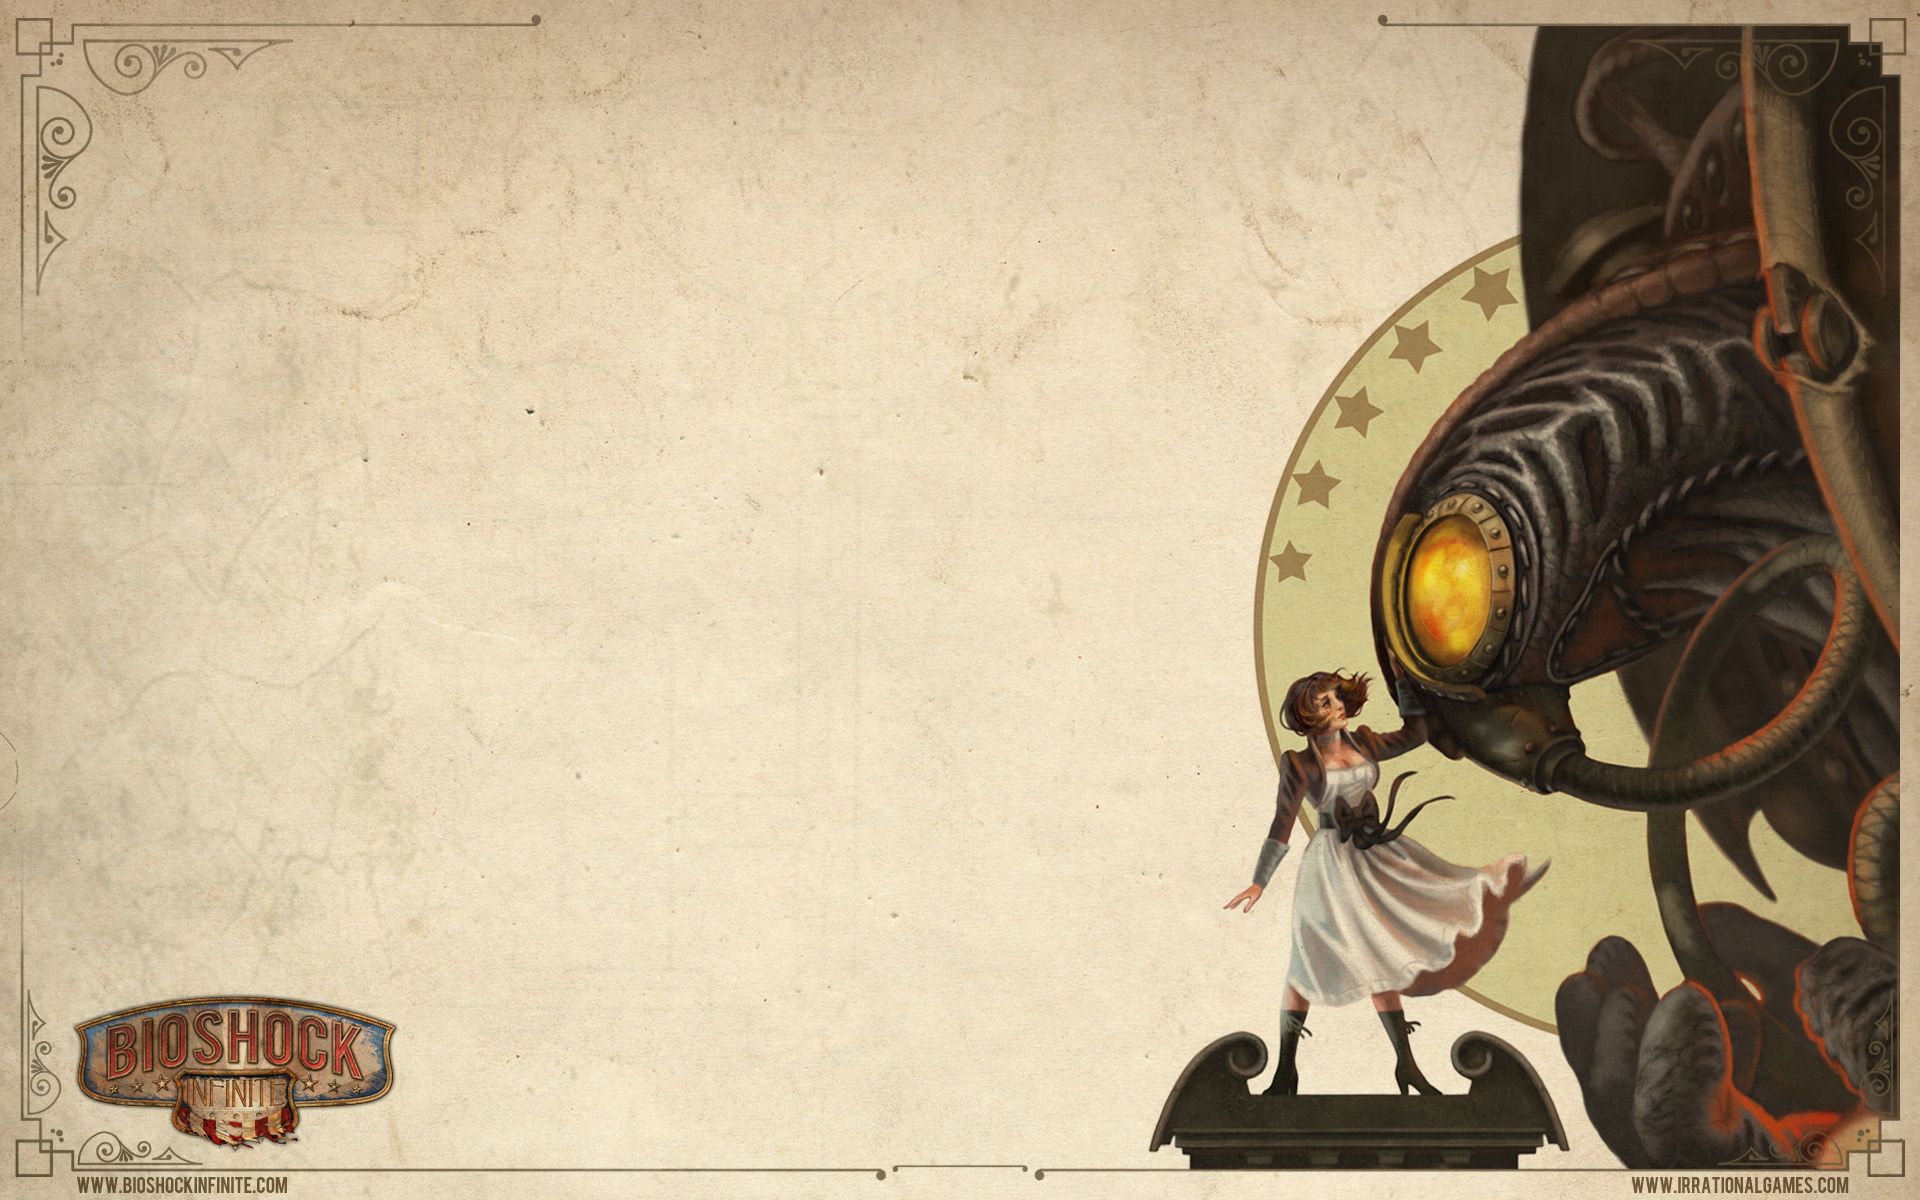 Bioshock infinite poster - Die preiswertesten Bioshock infinite poster im Überblick